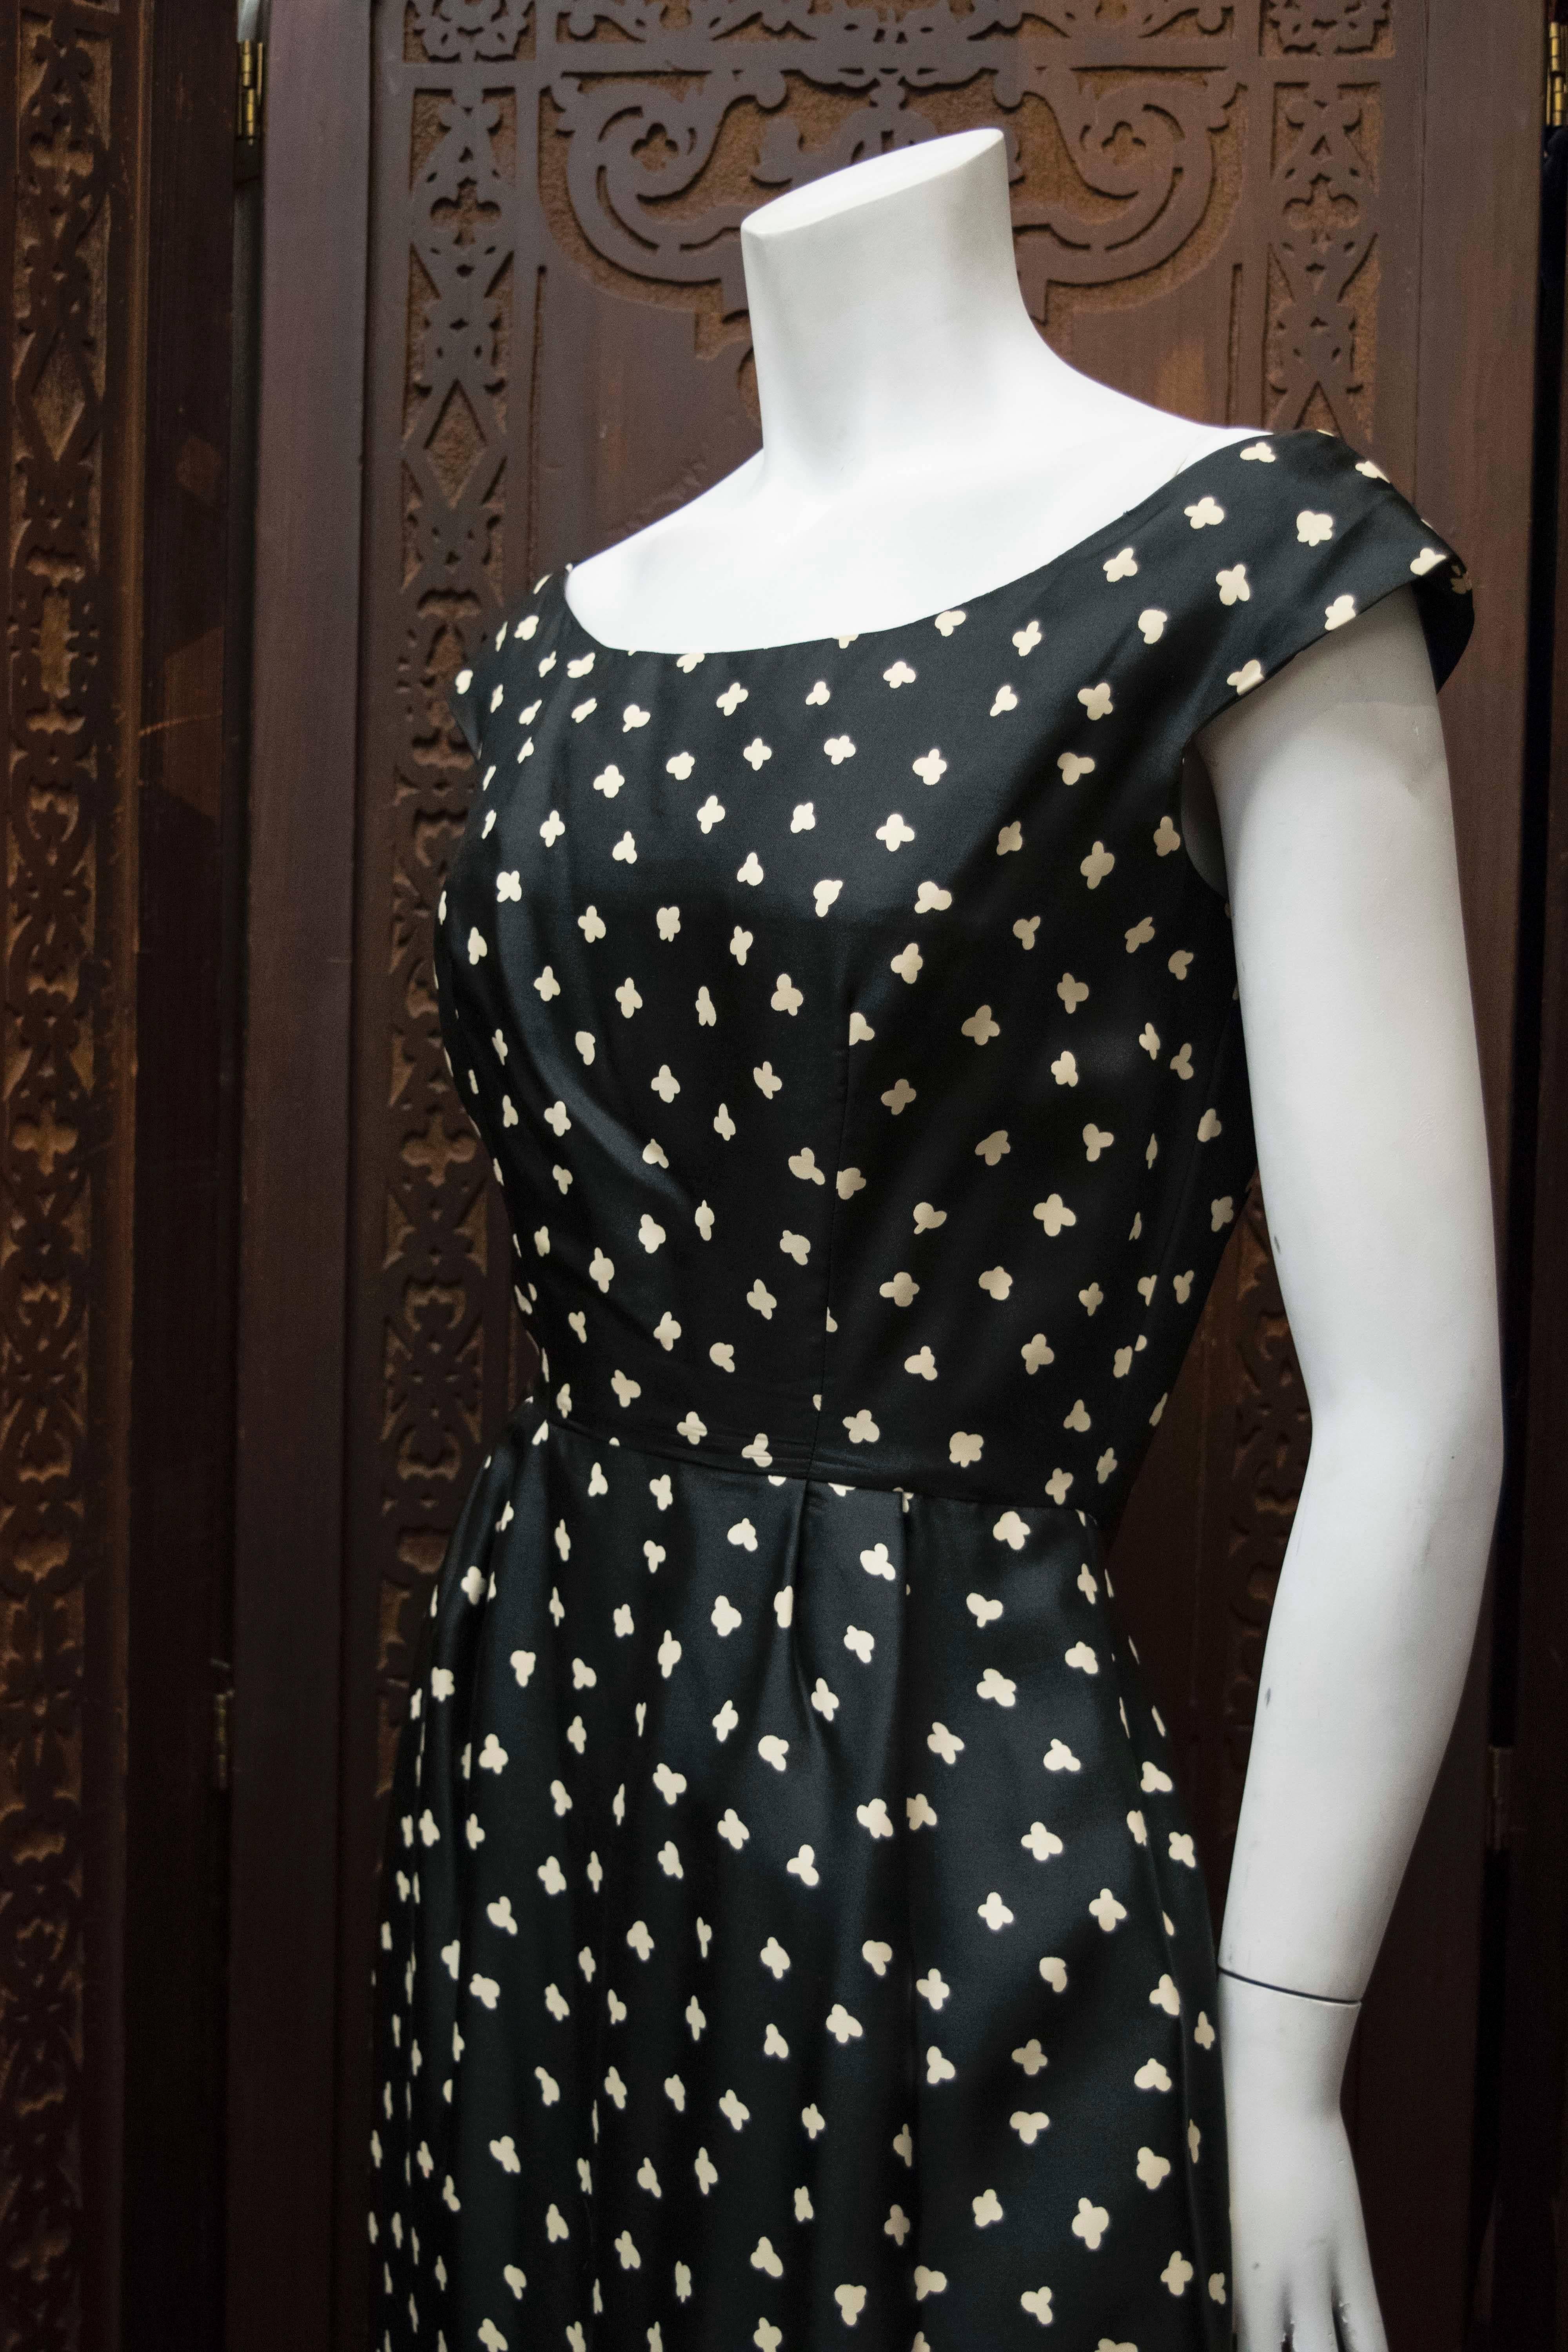 1950s Popcorn Print Dress

B 34
W 26
H 44
L 48